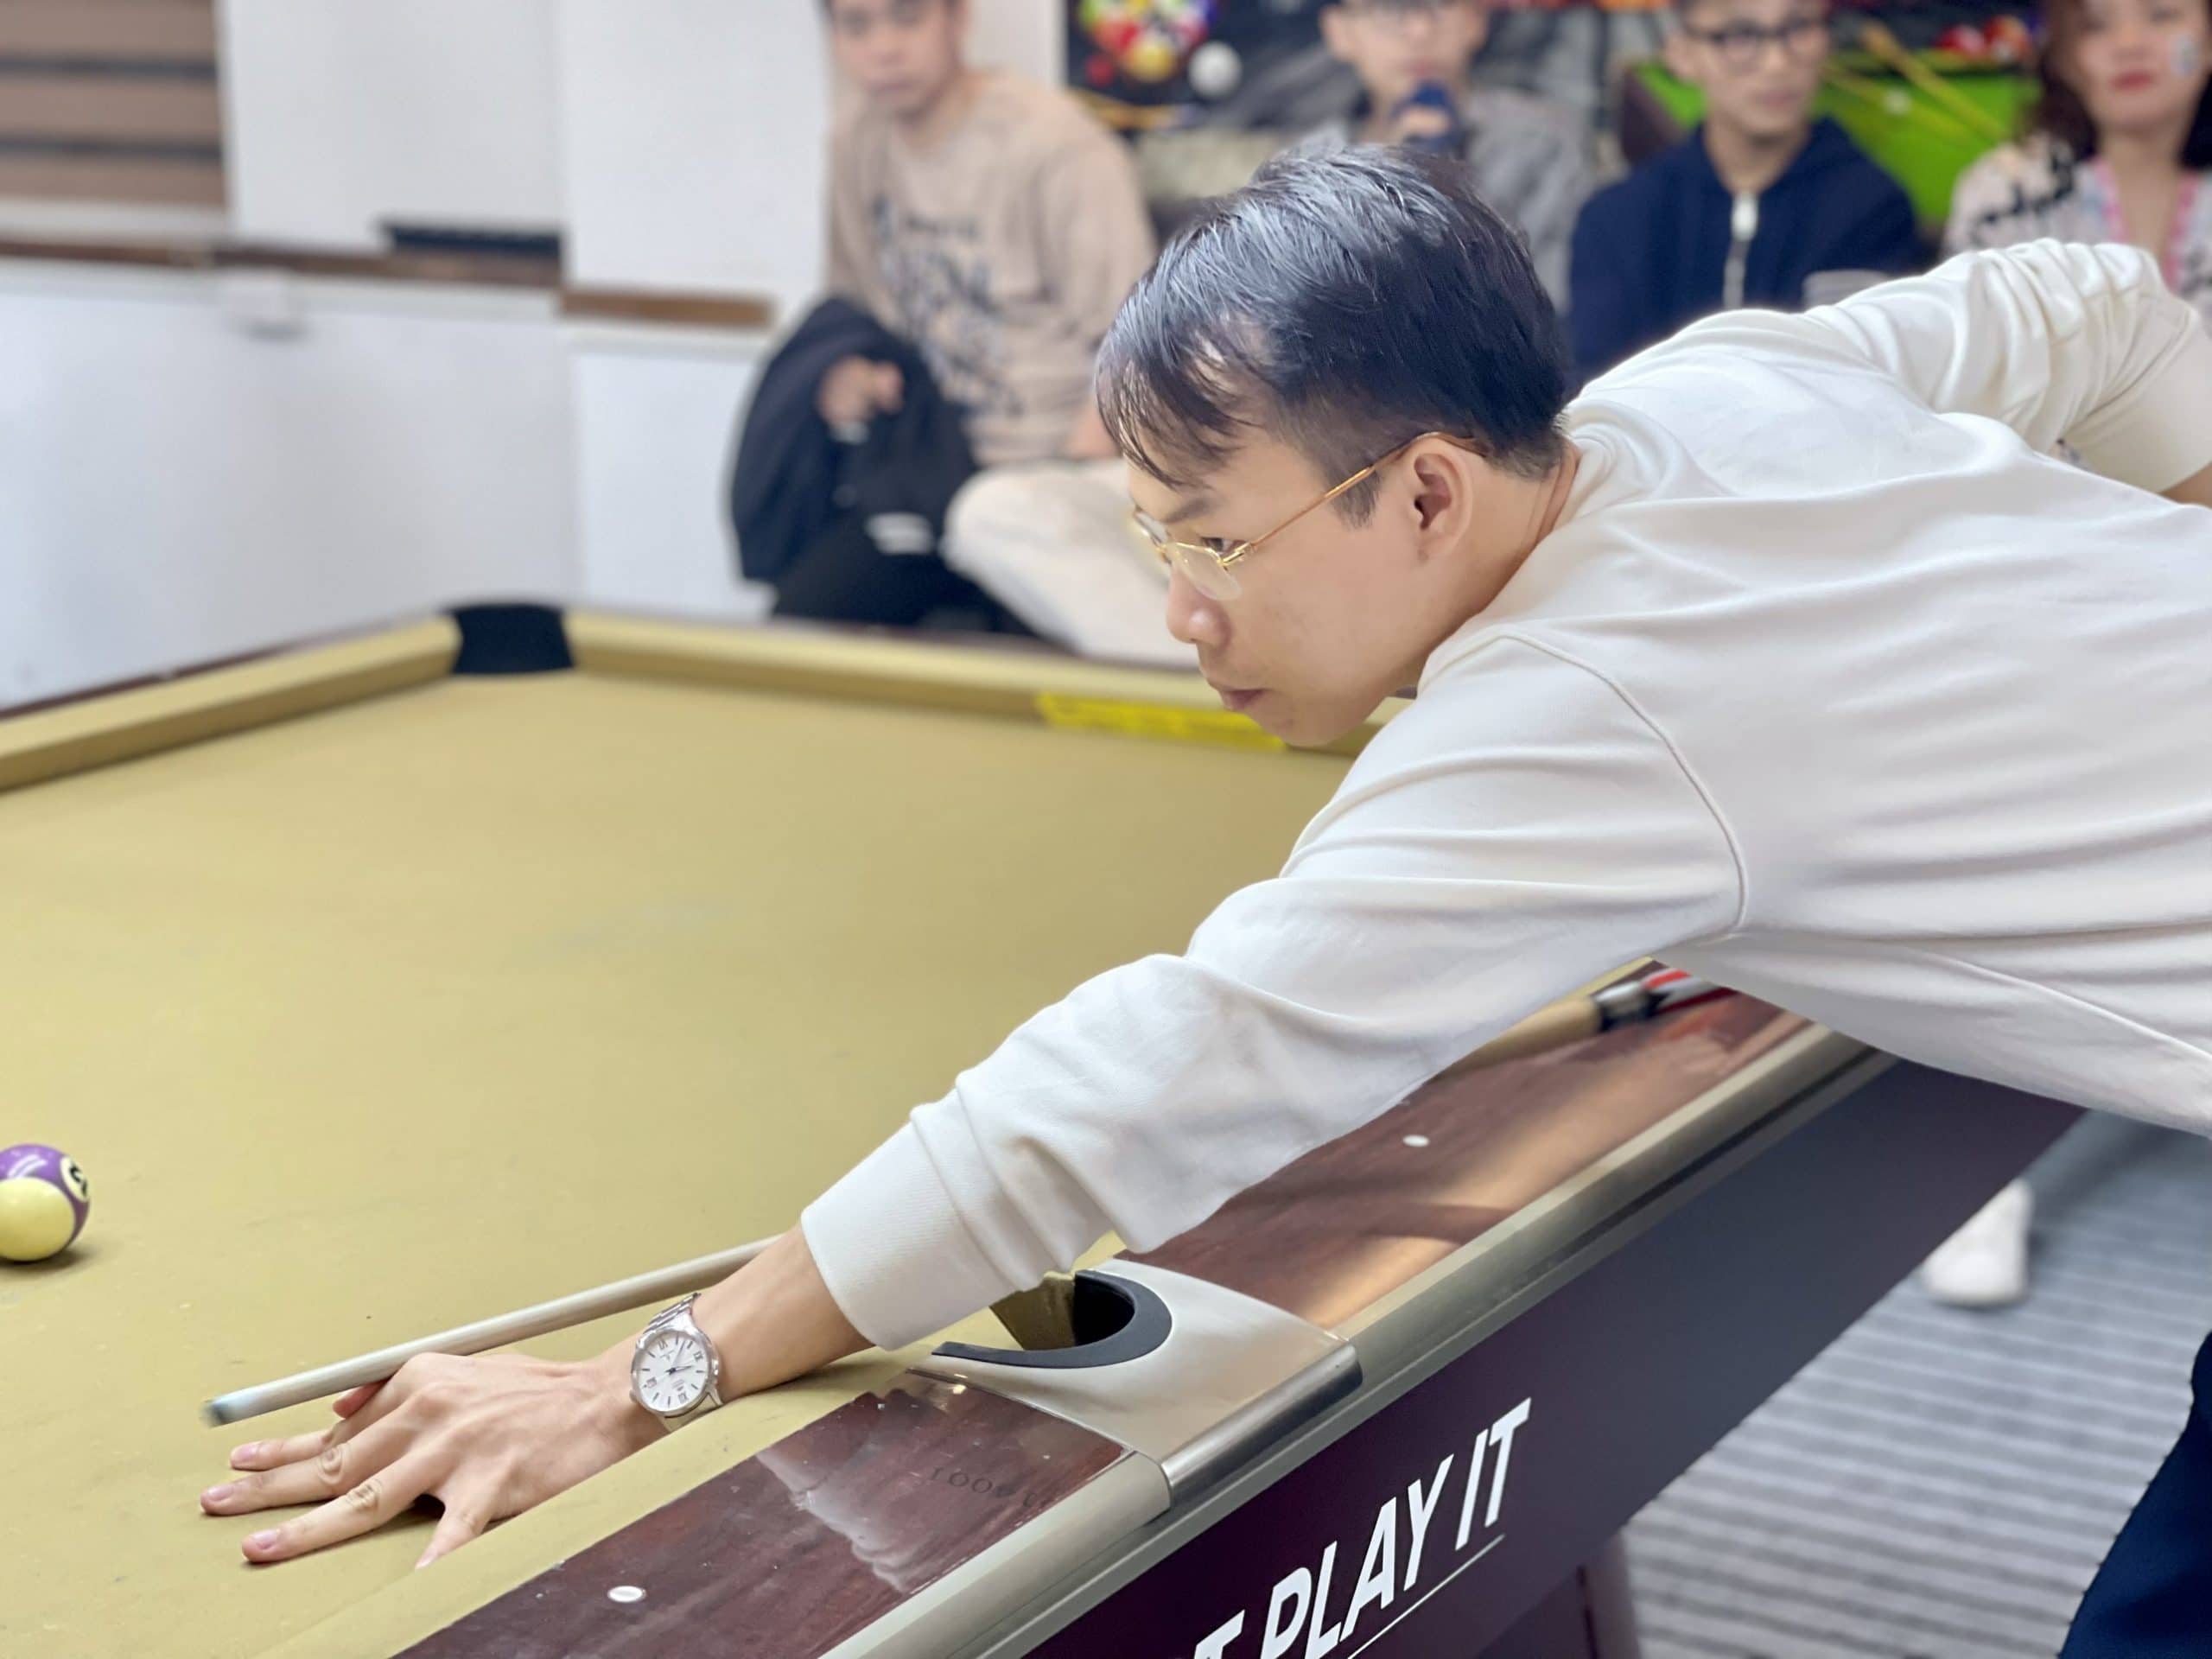 11 FAI Billiards Championship 2022 scaled